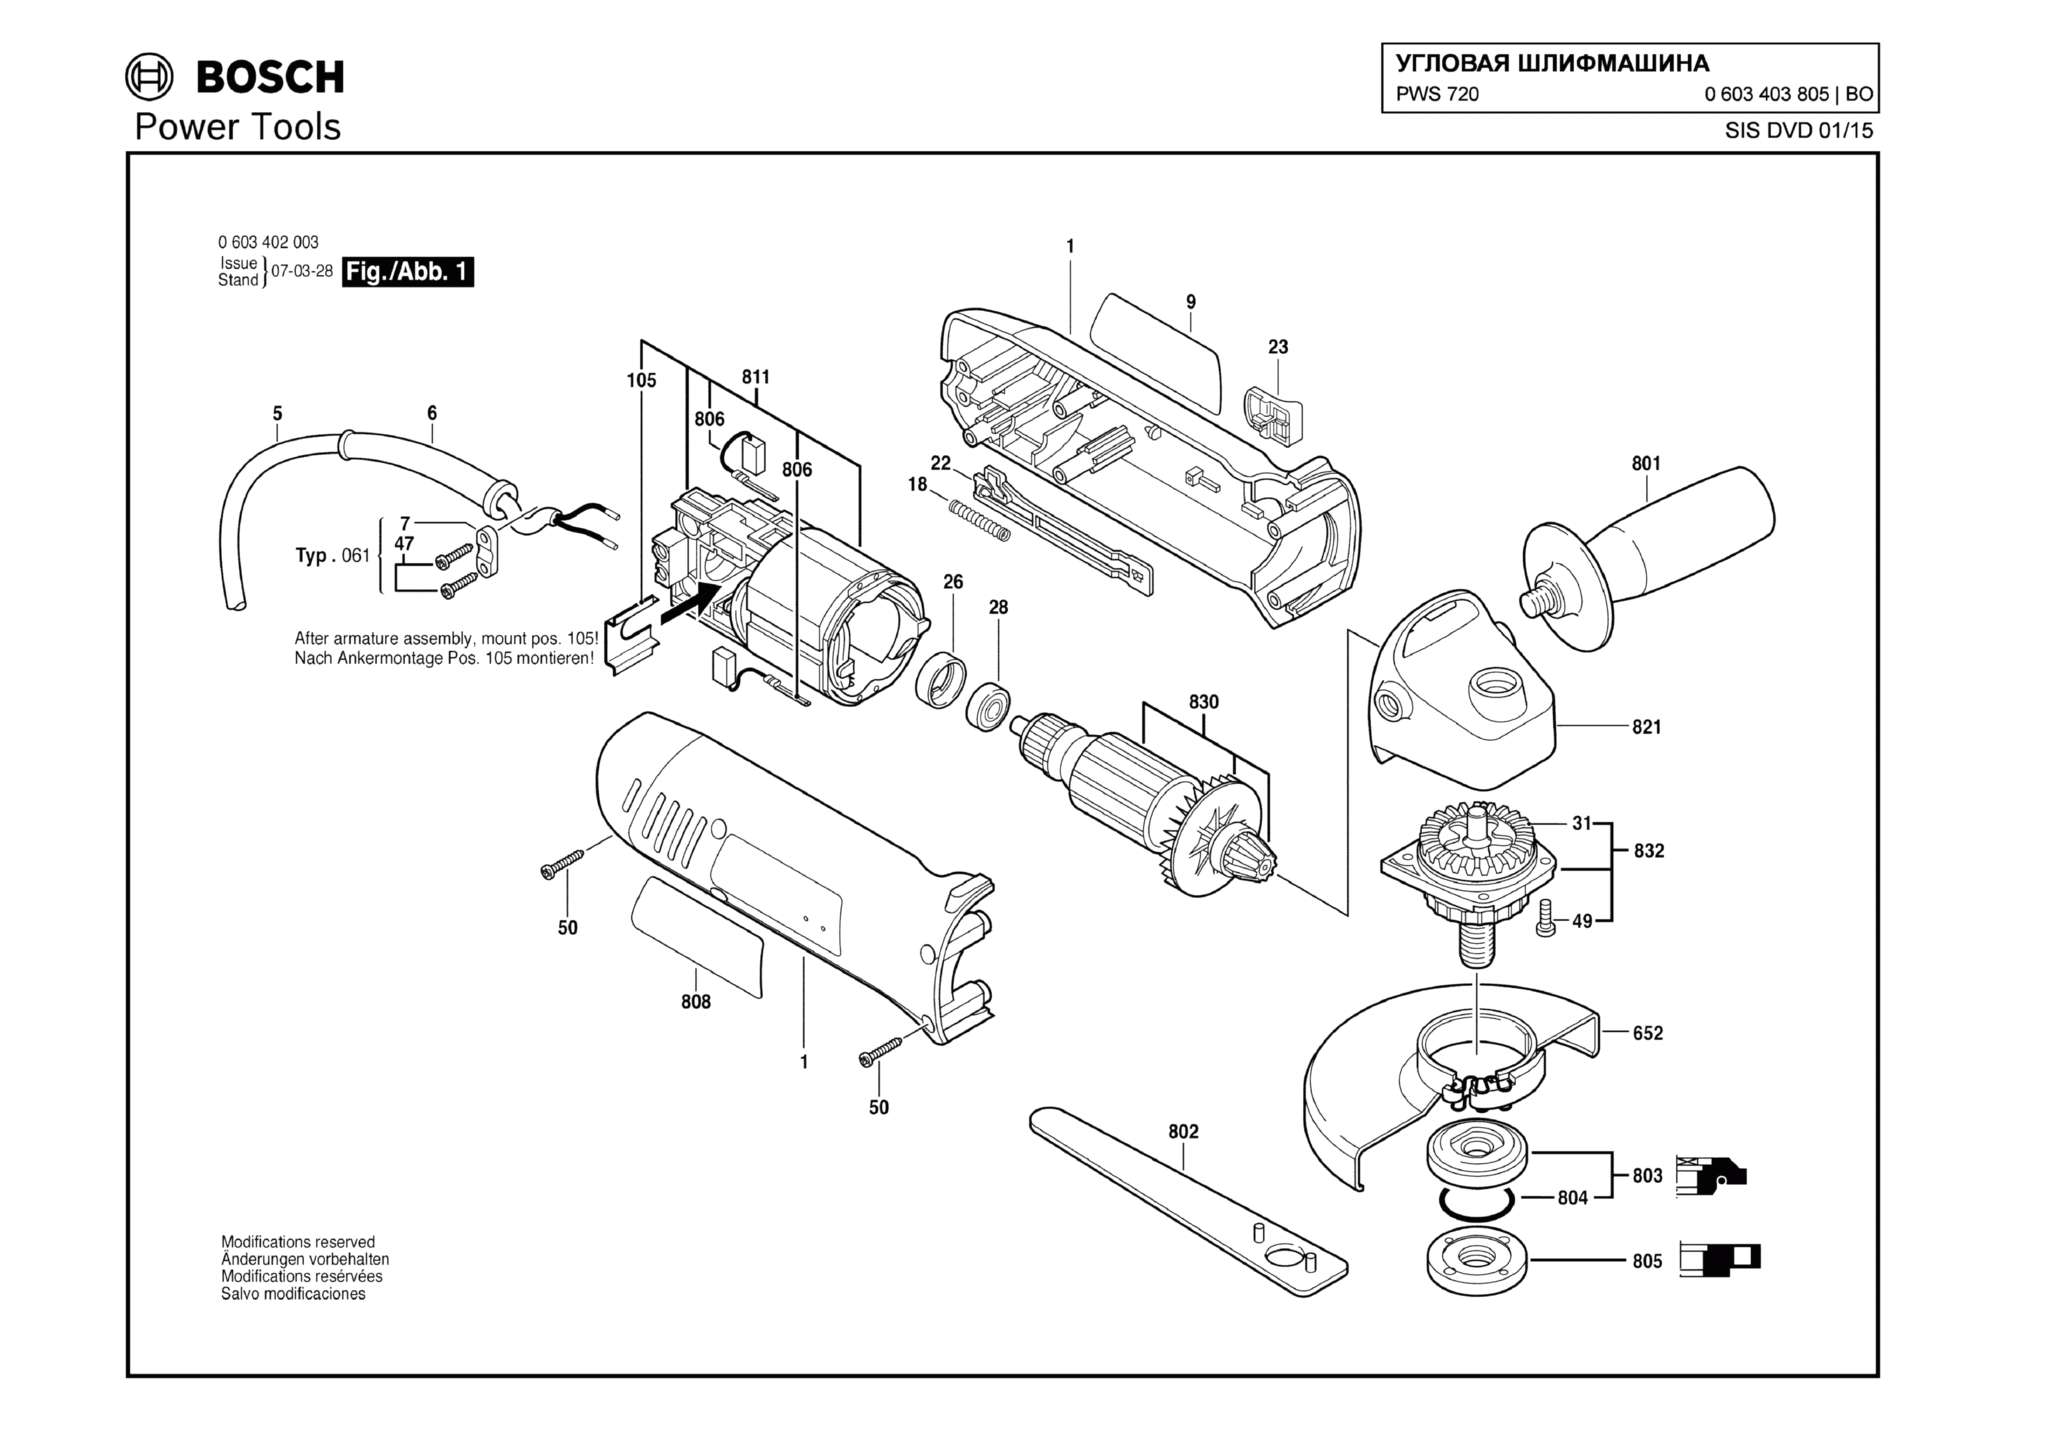 Запчасти, схема и деталировка Bosch PWS 720 (ТИП 0603403805)